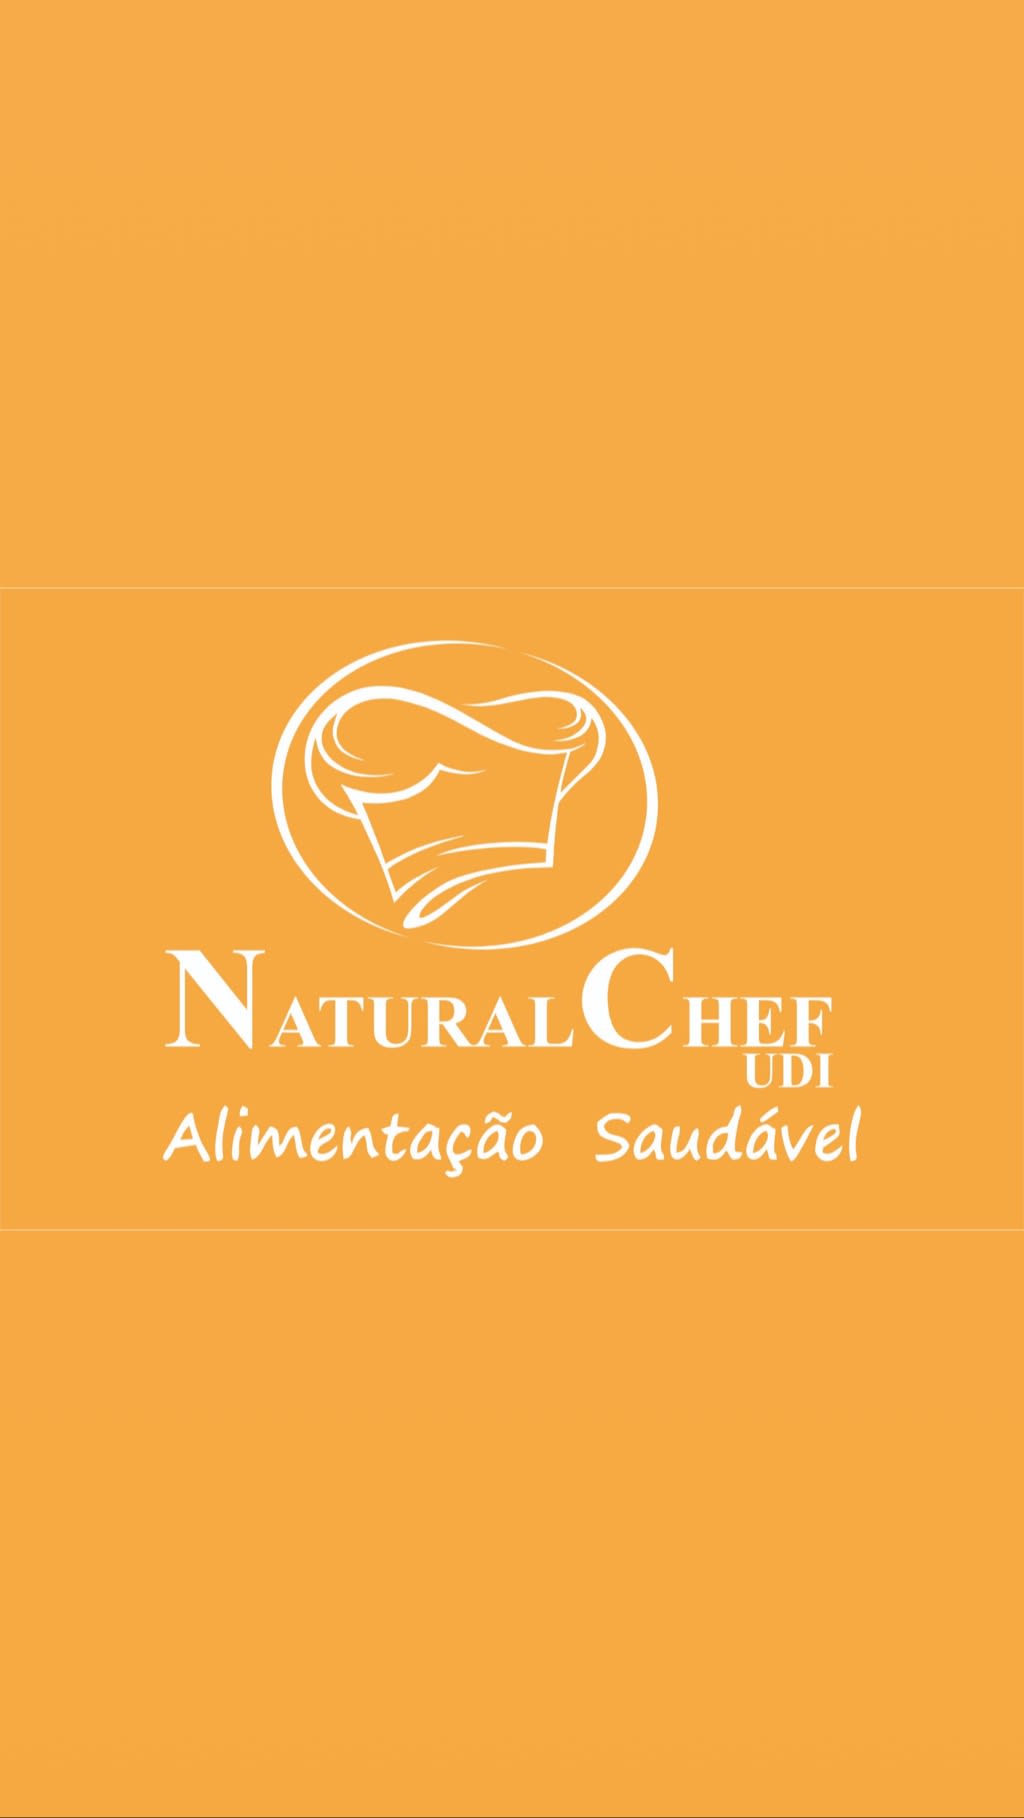 Natural Chef Udi